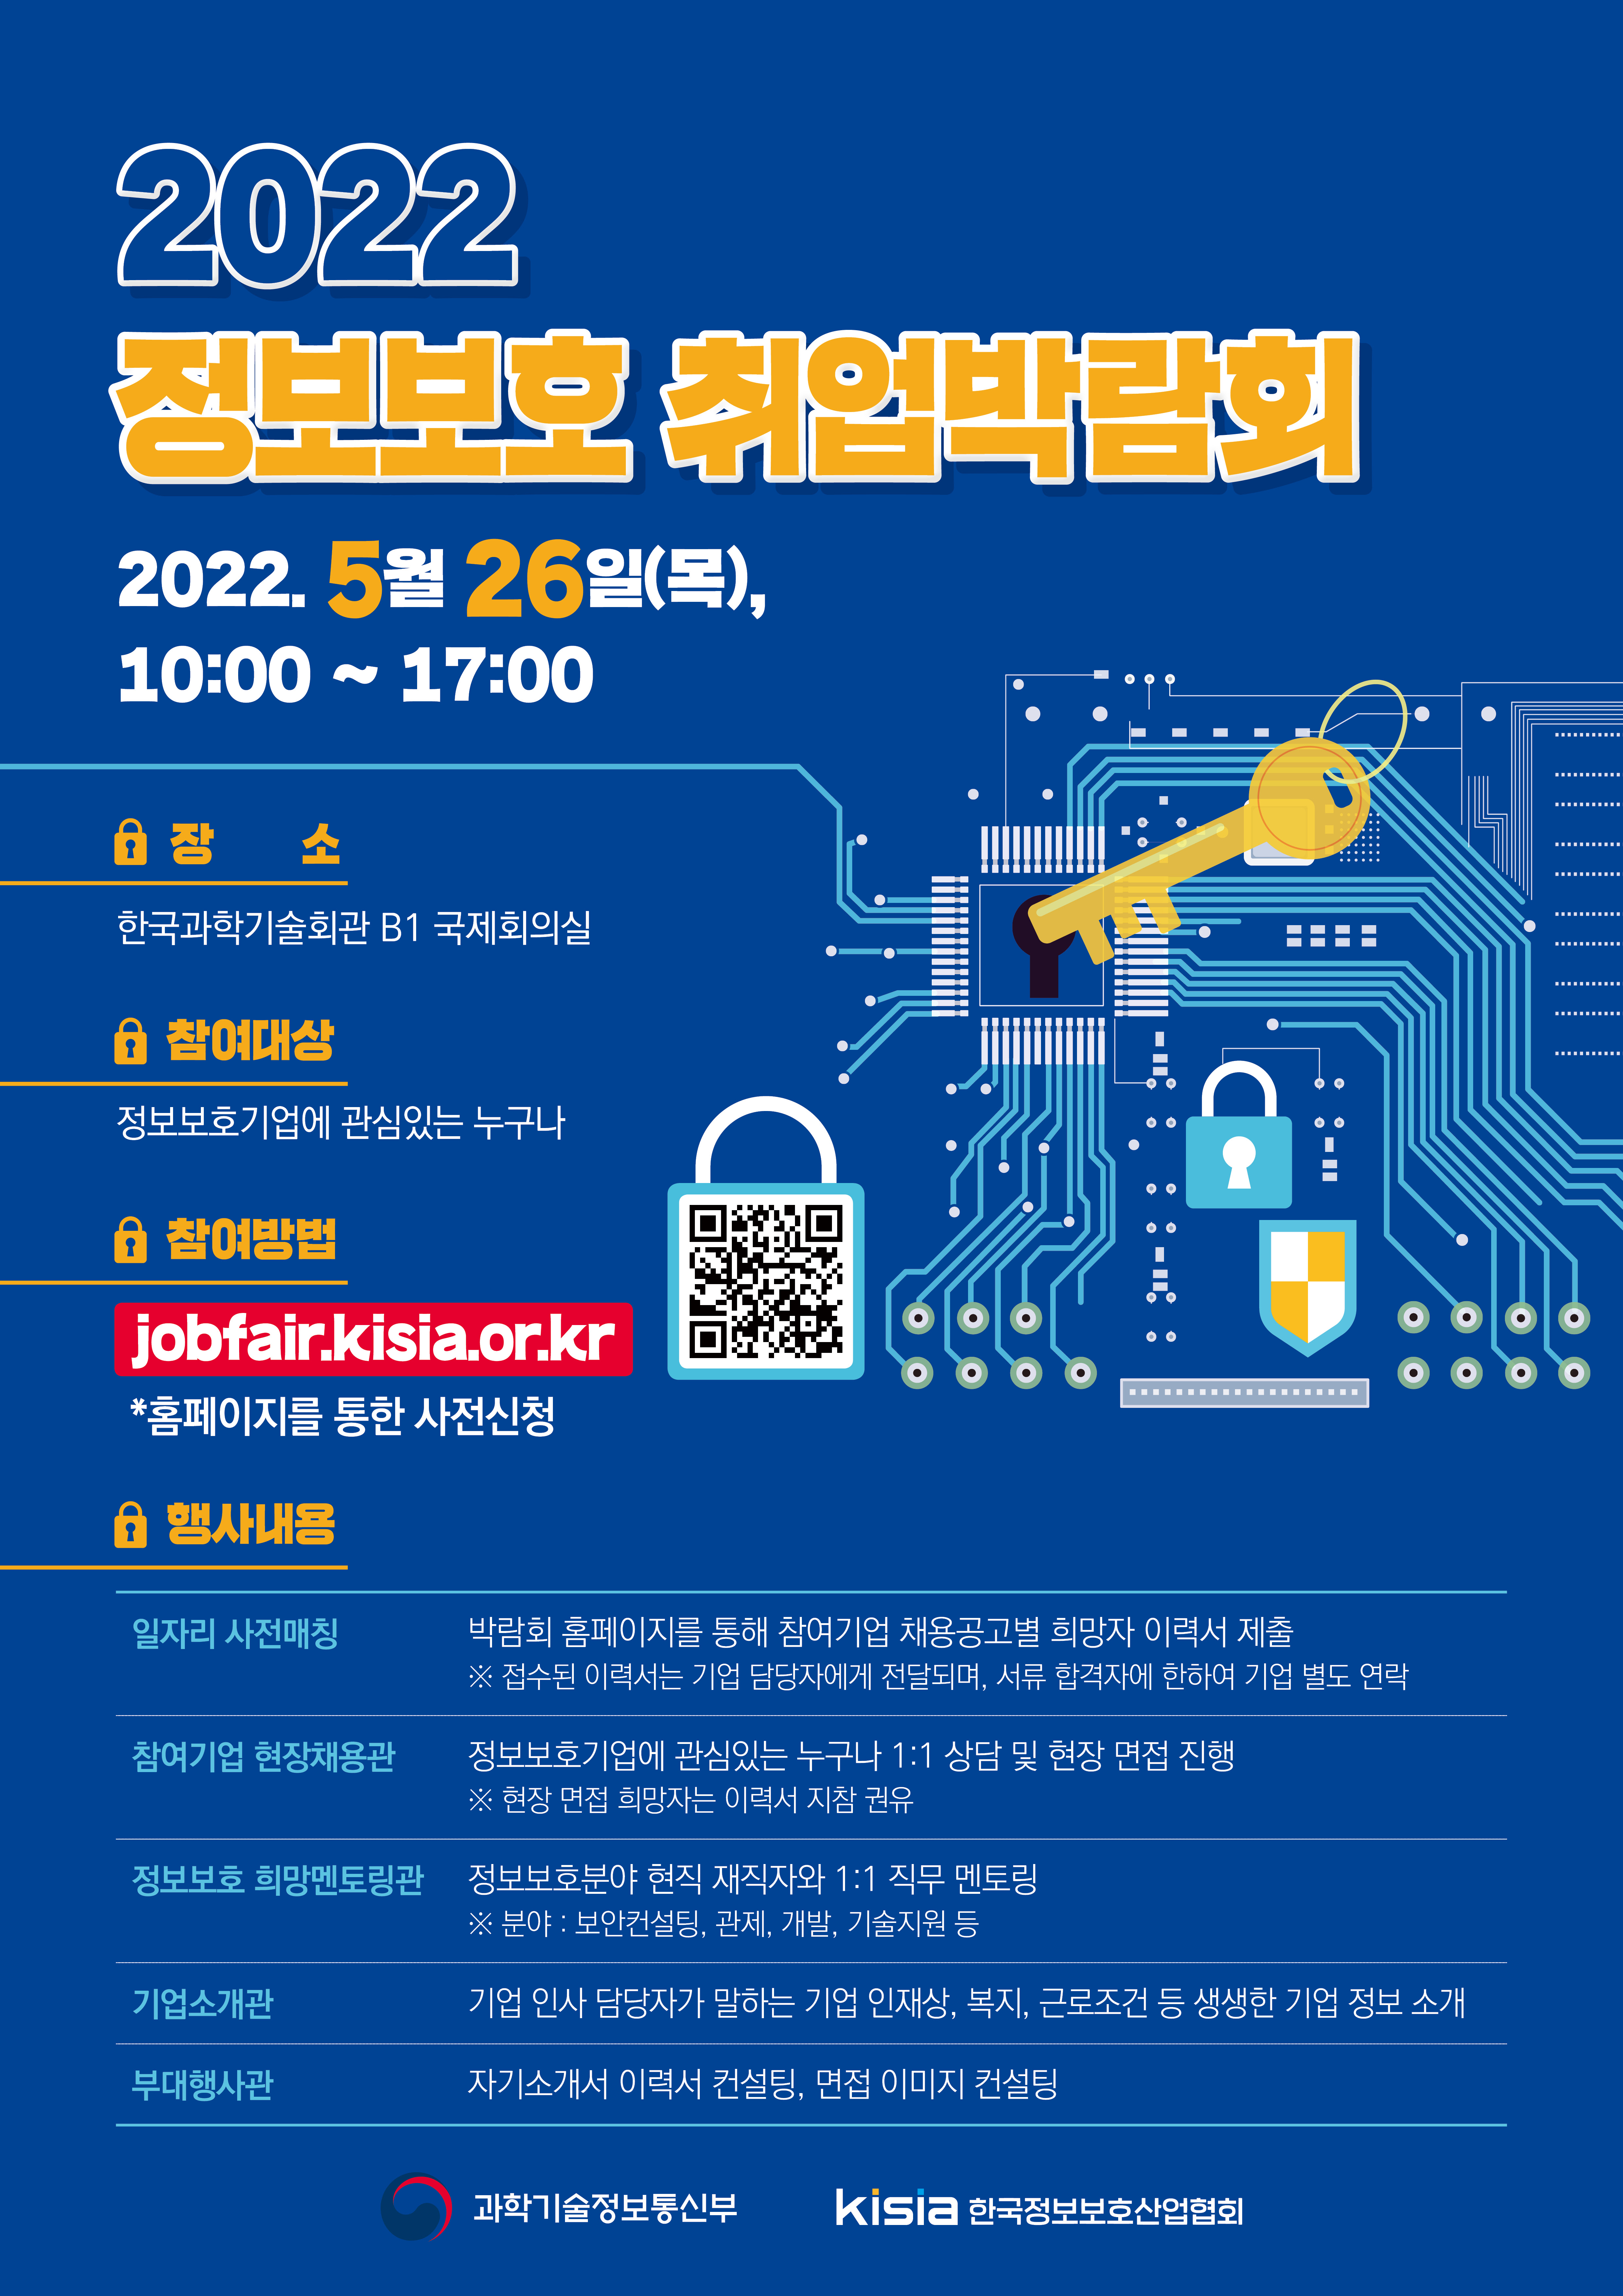 붙임.2022 상반기 정보보호 취업박람회 포스터_웹용.jpg